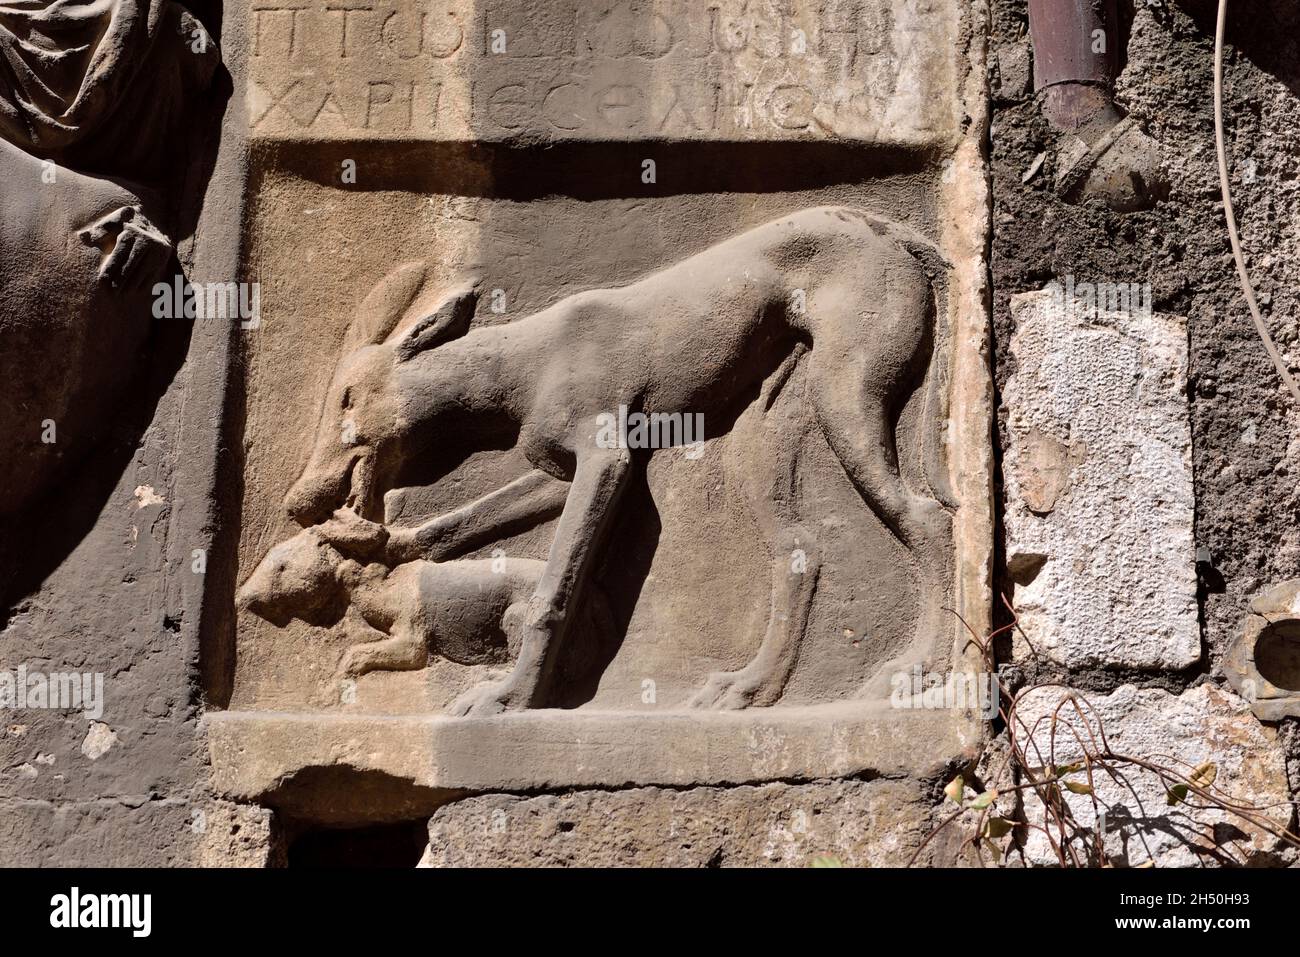 italy, rome, jewish ghetto, via del portico d'ottavia, casa di lorenzo manili, greek inscription and bas relief with deer and fawn Stock Photo